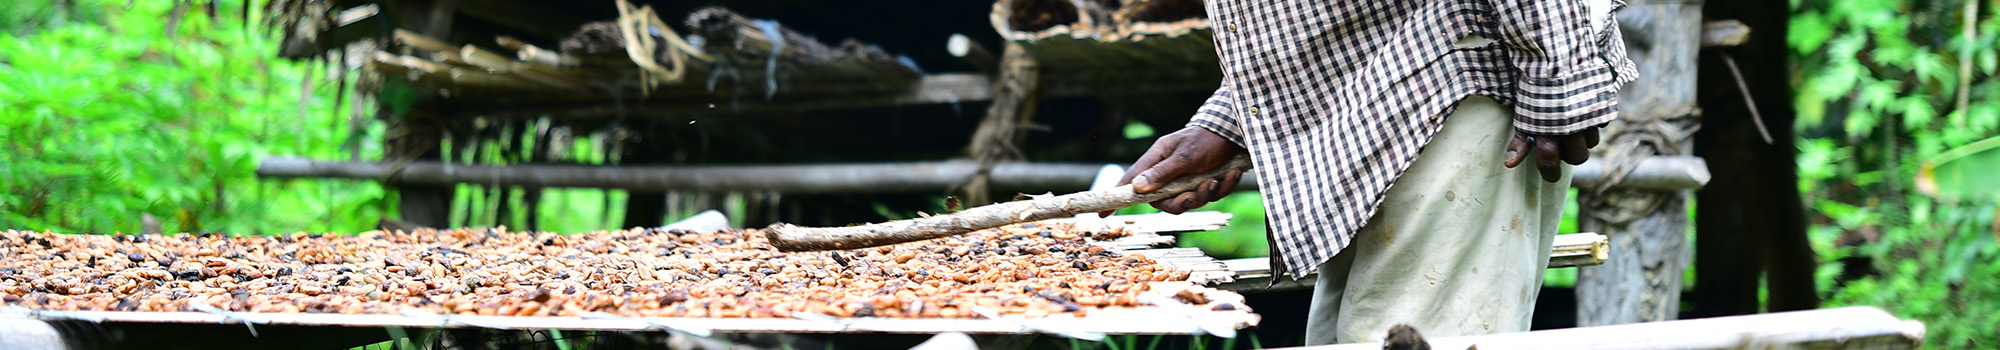 Séchage du cacao en Côte d'Ivoire. © Fracture Numérique, Cirad. 